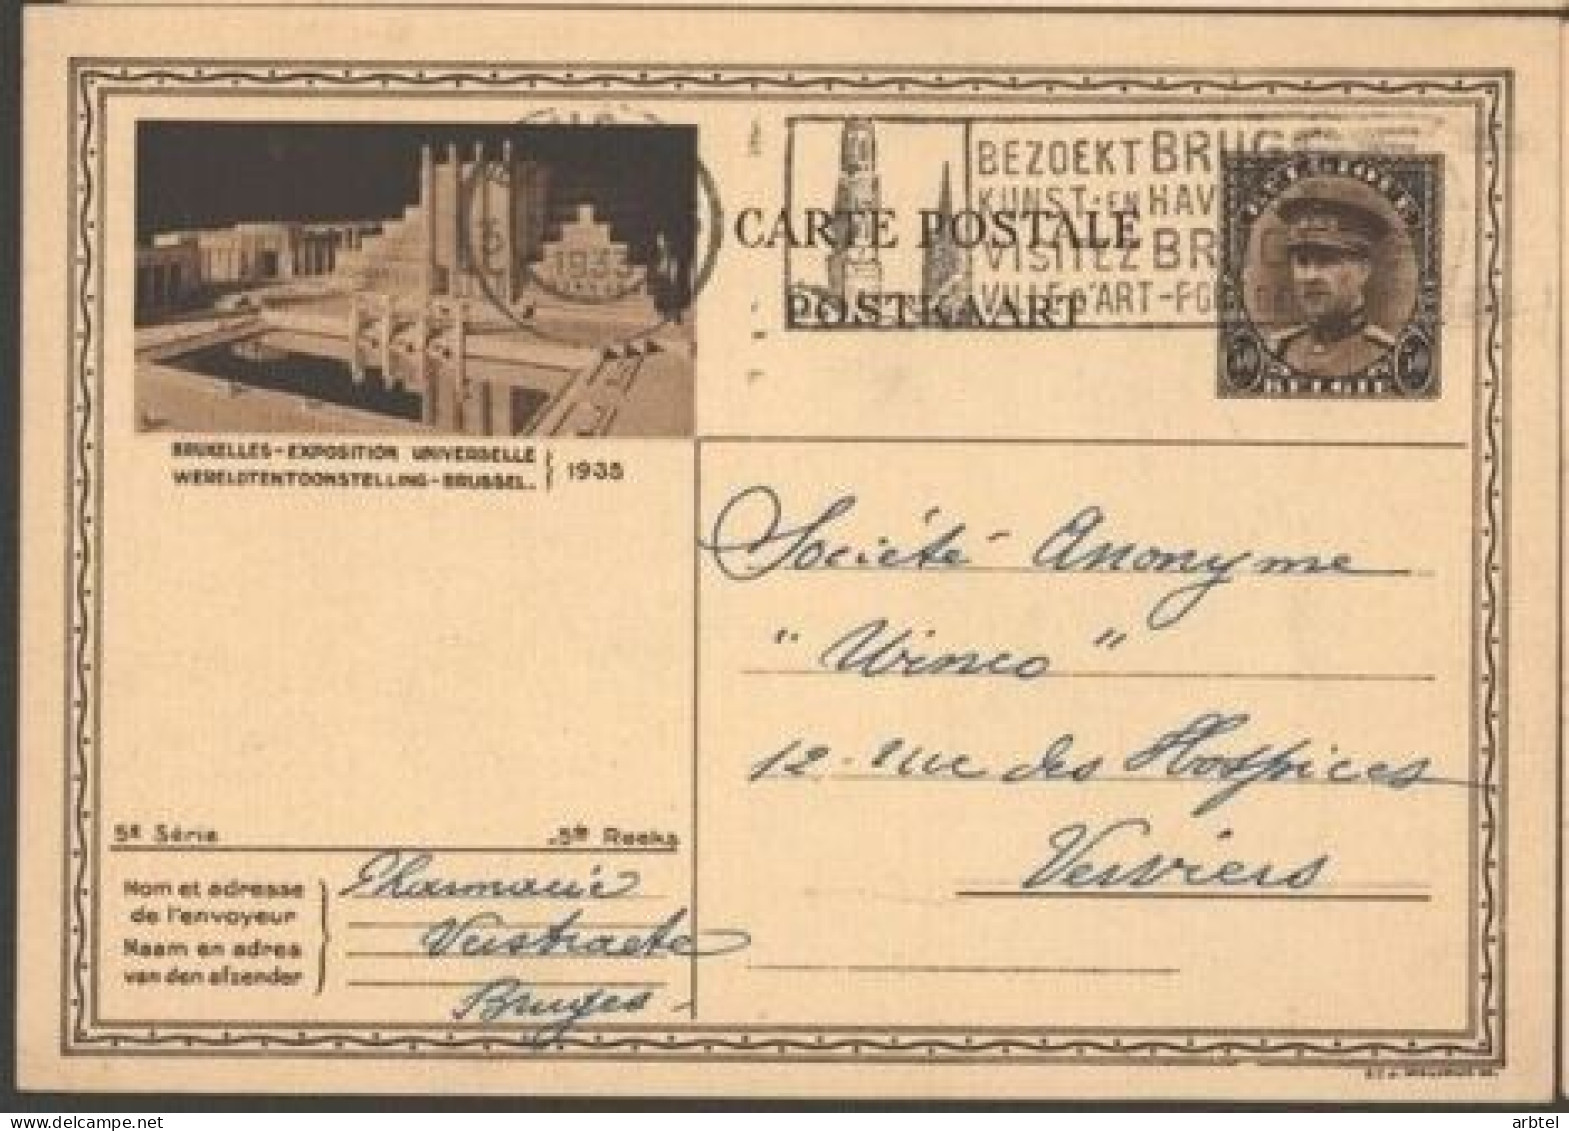 BELGICA ENTERO POSTAL EXPOSITION BRUXELLES 1935 MAT BRUGEE - 1935 – Bruxelles (Belgique)